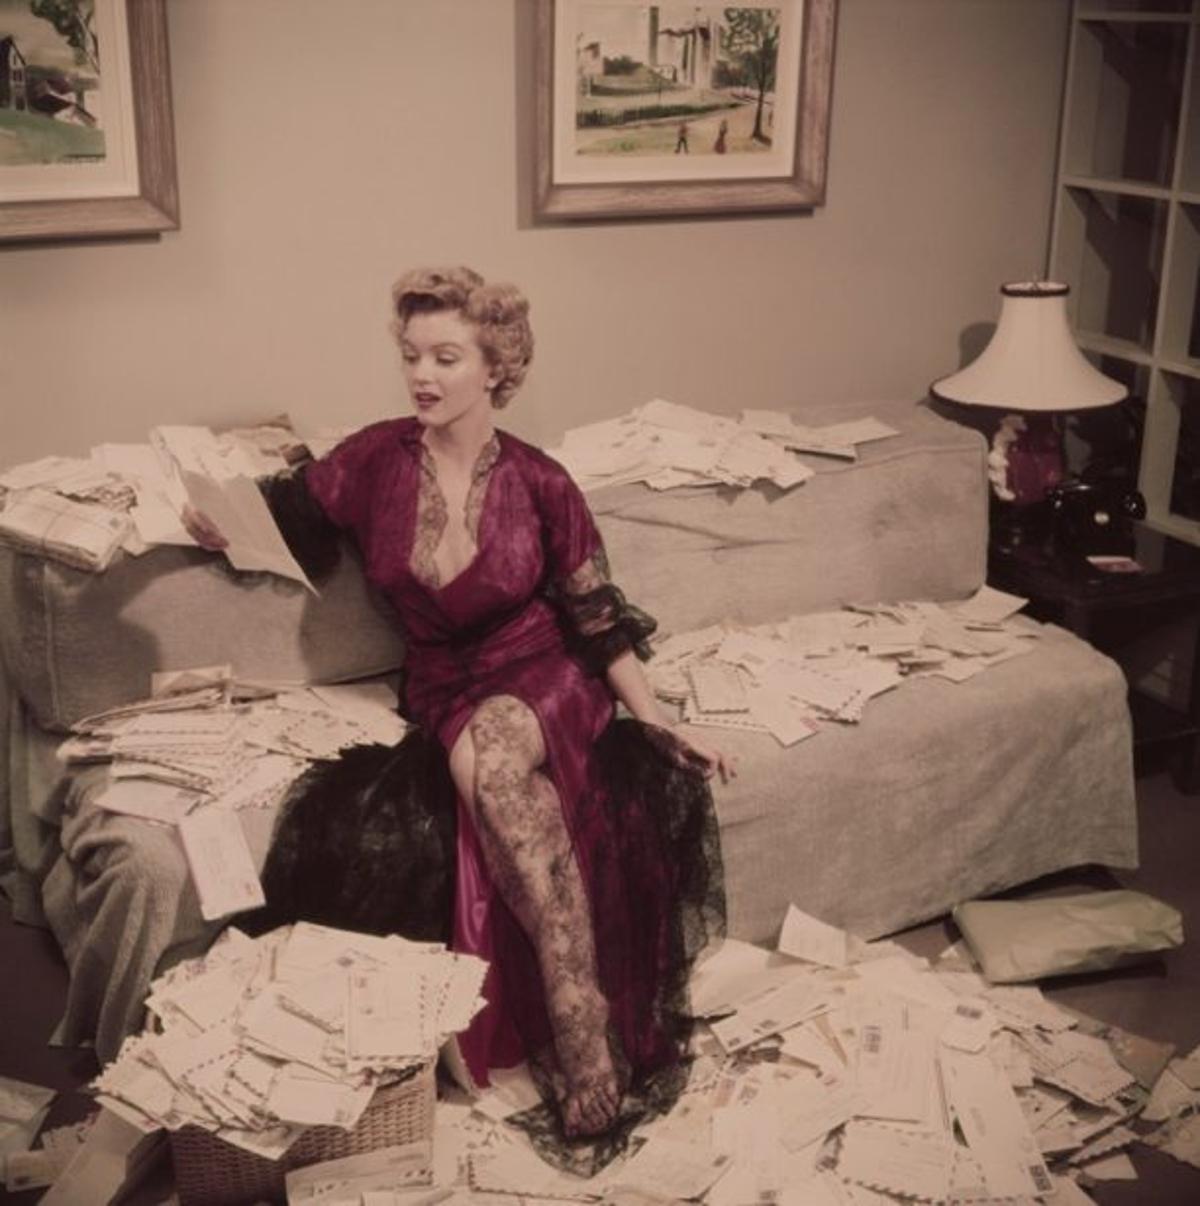 Fanpost 
1952
von Slim Aarons

gedruckt 2023
Slim Aarons Limited Estate Edition

Marilyn Monroe (1926 - 1962), in einem roten Negligé mit schwarzer Spitze, sortiert ihre Fanpost kurz nach der Veröffentlichung ihres Films "Der Asphaltdschungel",